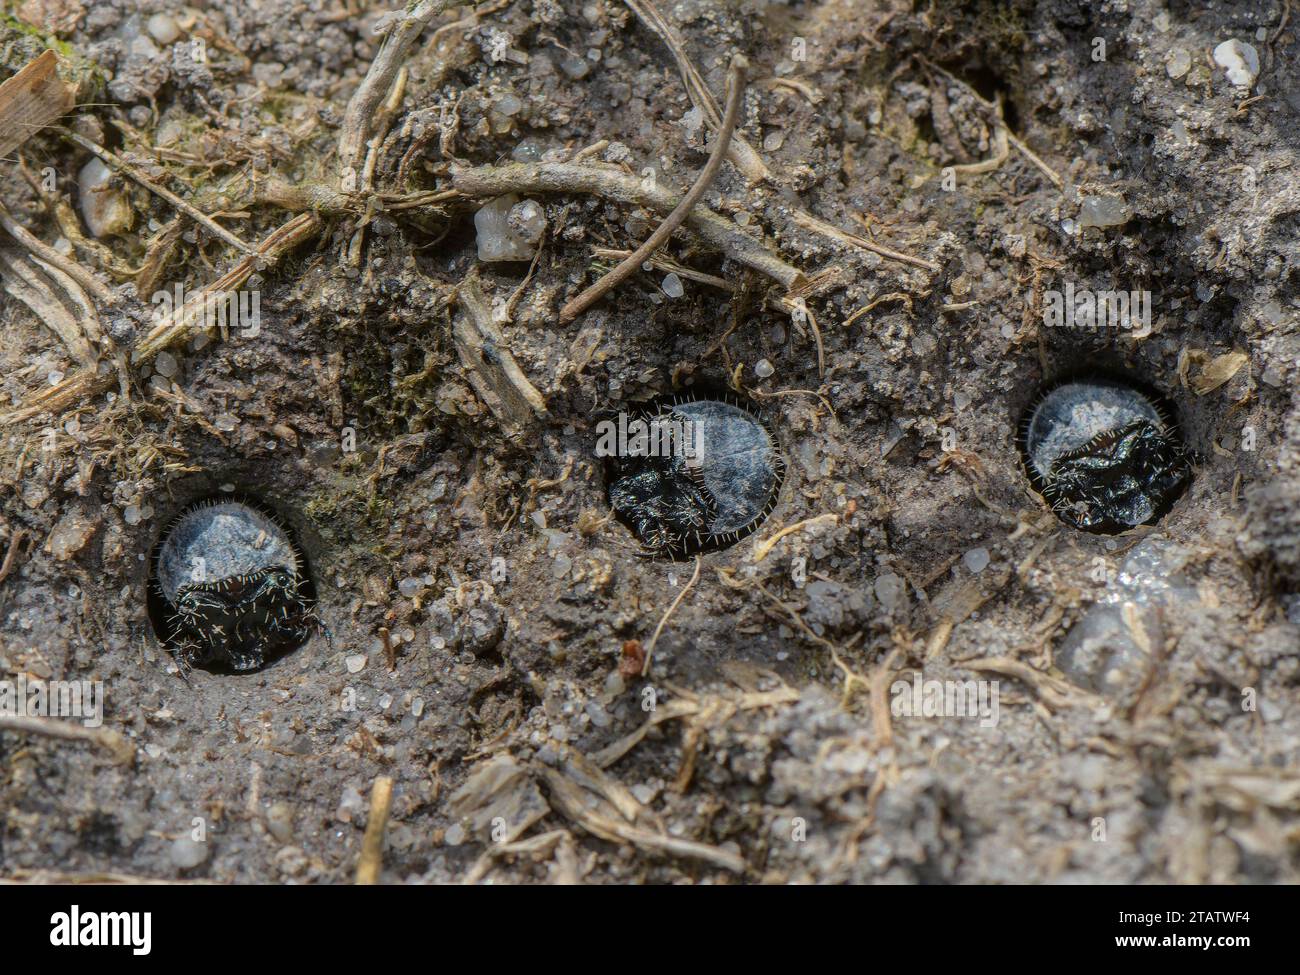 Larvae of Green tiger beetle, Cicindela campestris living in a group on damp heathland, Dorset. Stock Photo